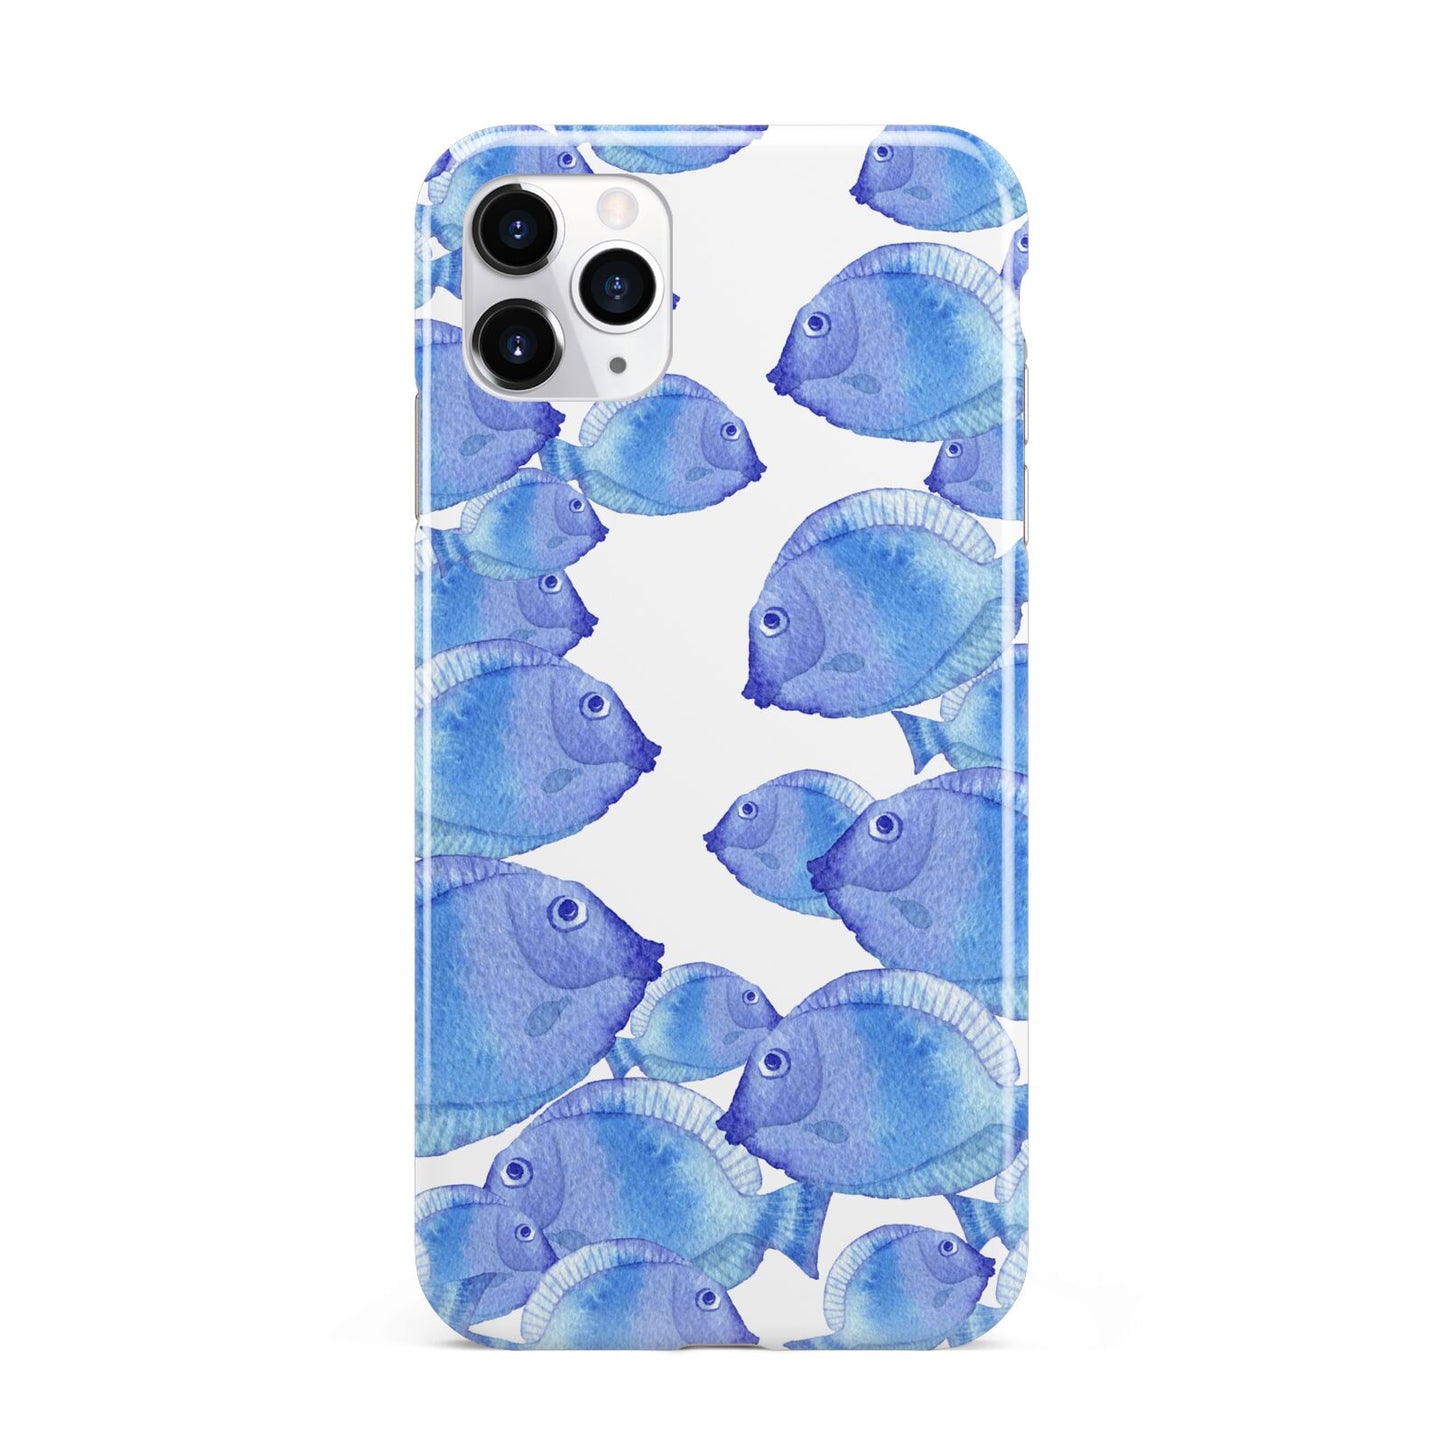 Fish iPhone 11 Pro Max 3D Tough Case